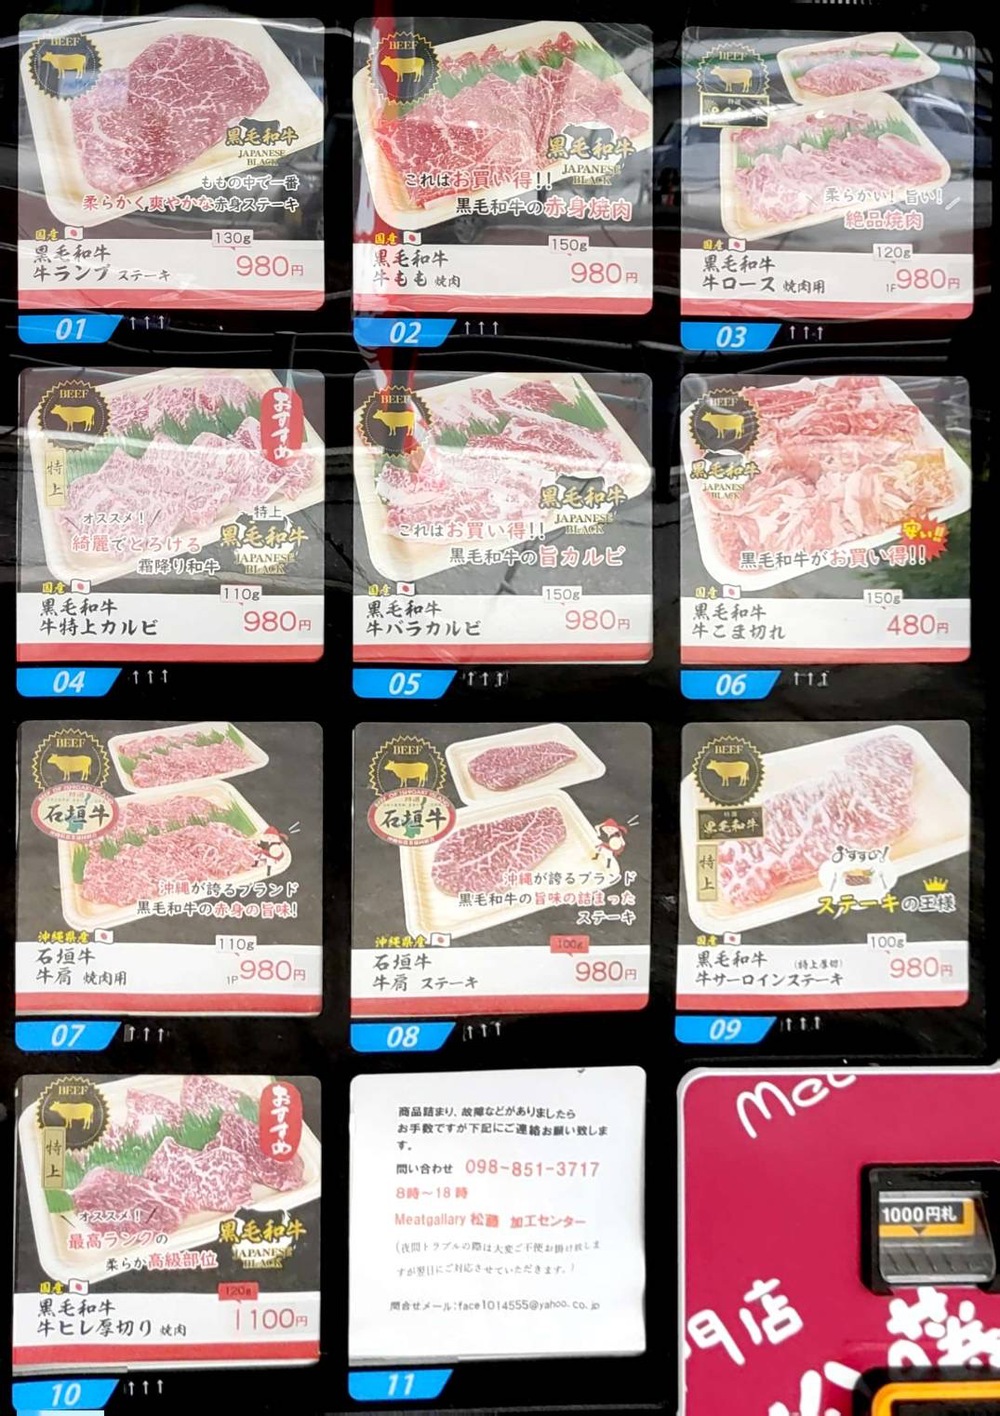 【セール中】お肉自販機として県内最大の設置【松藤ど冷えもん】